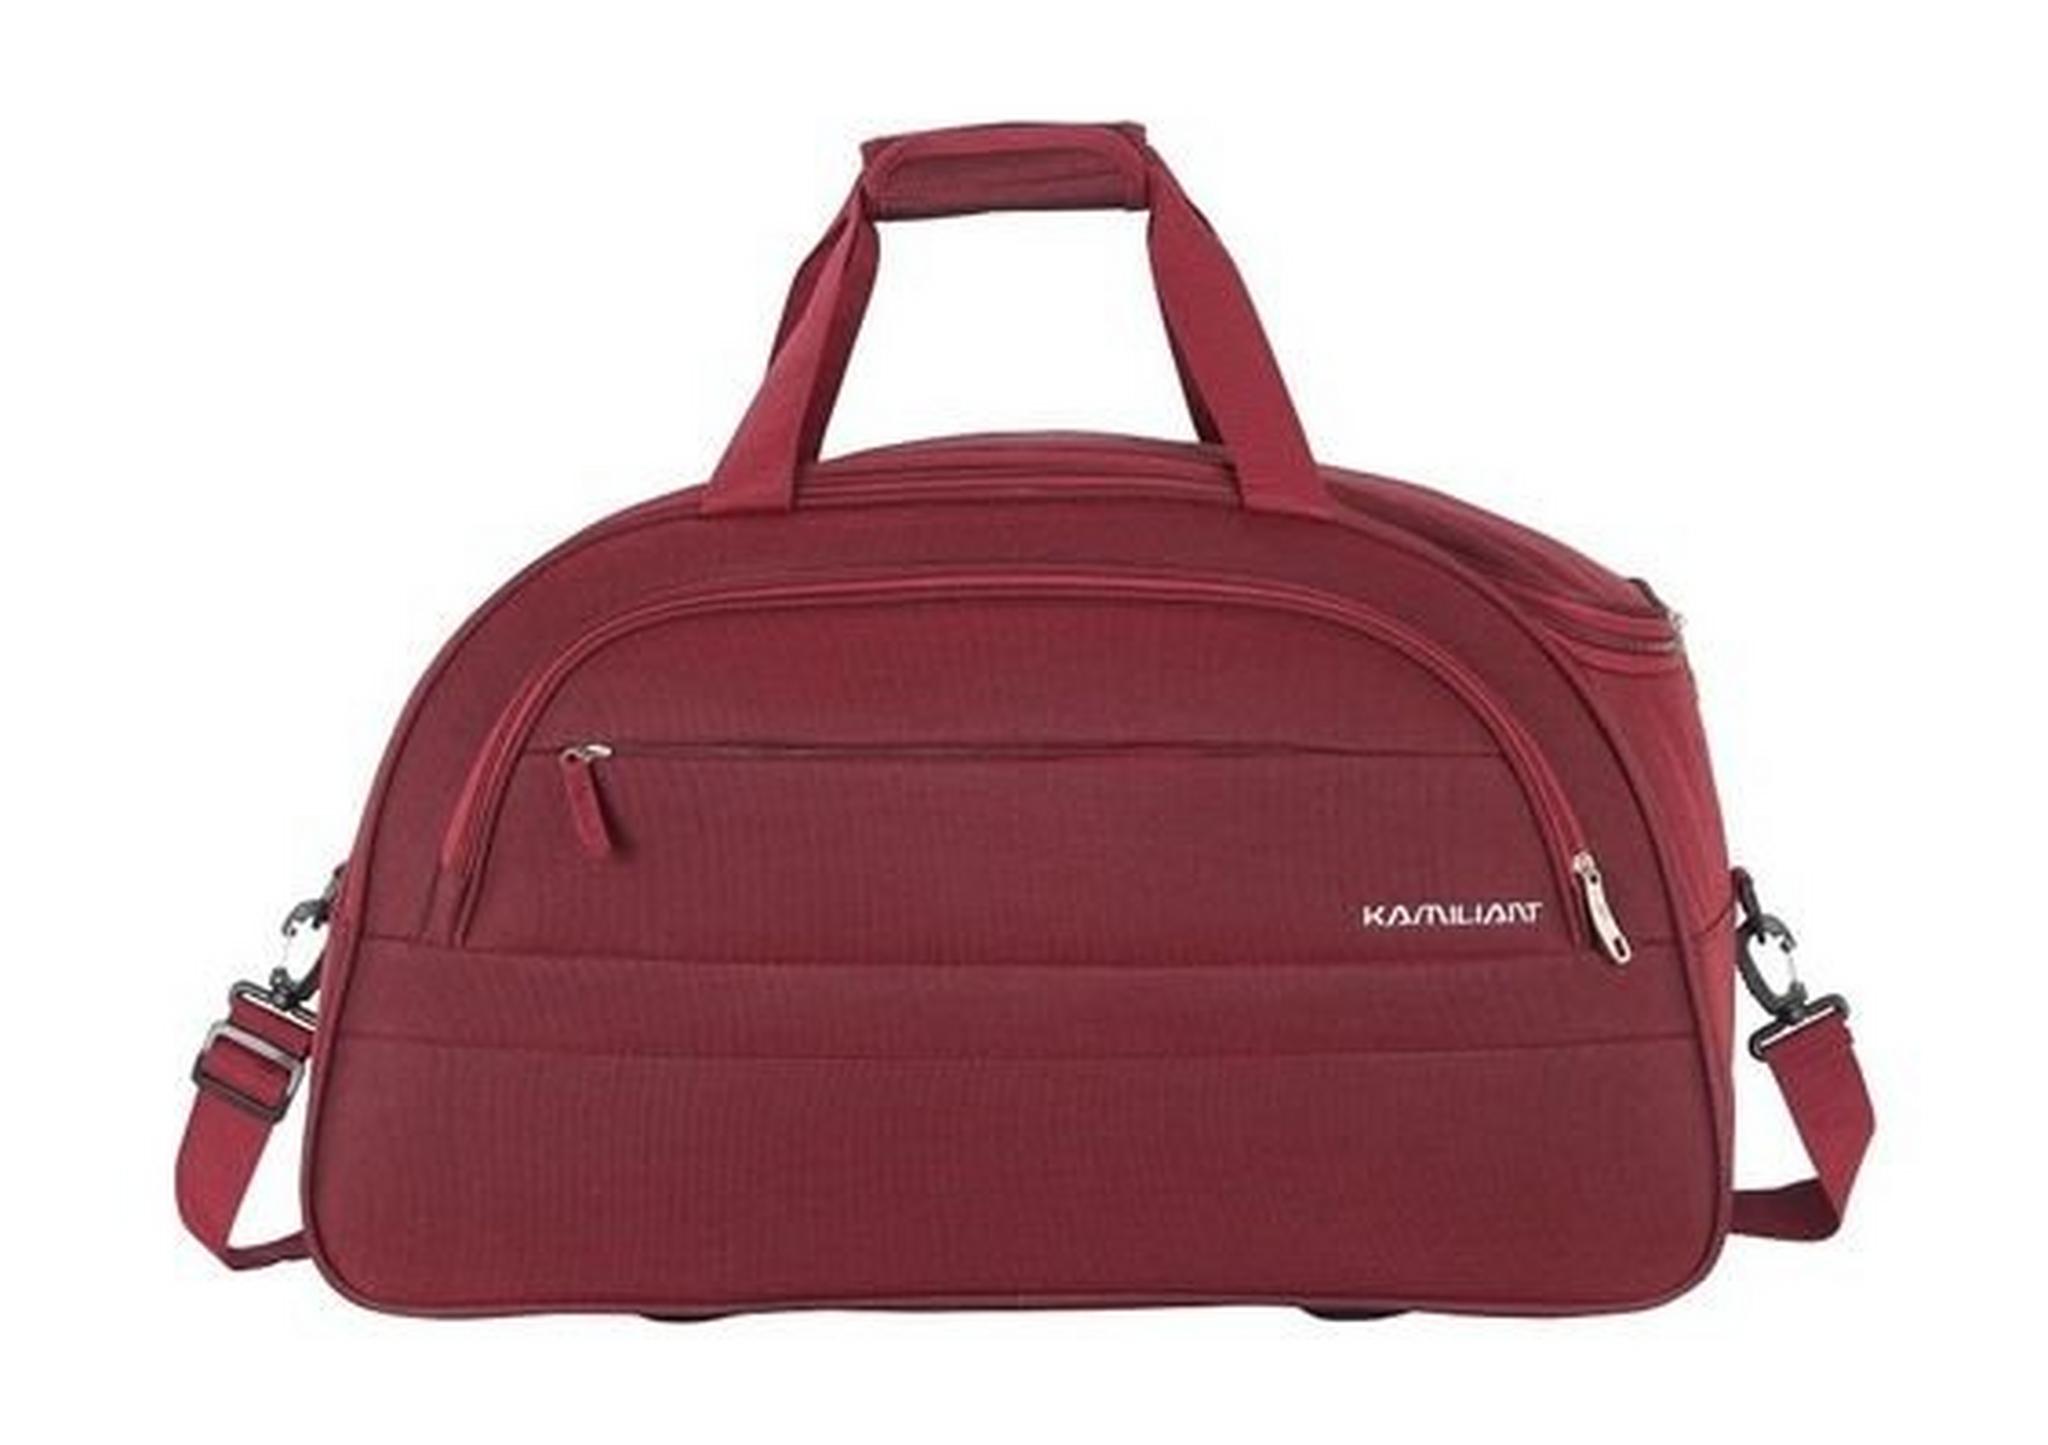 حقيبة زويا دافل من كاميليانت - ٥٥ سم - أحمر (19OX00004)